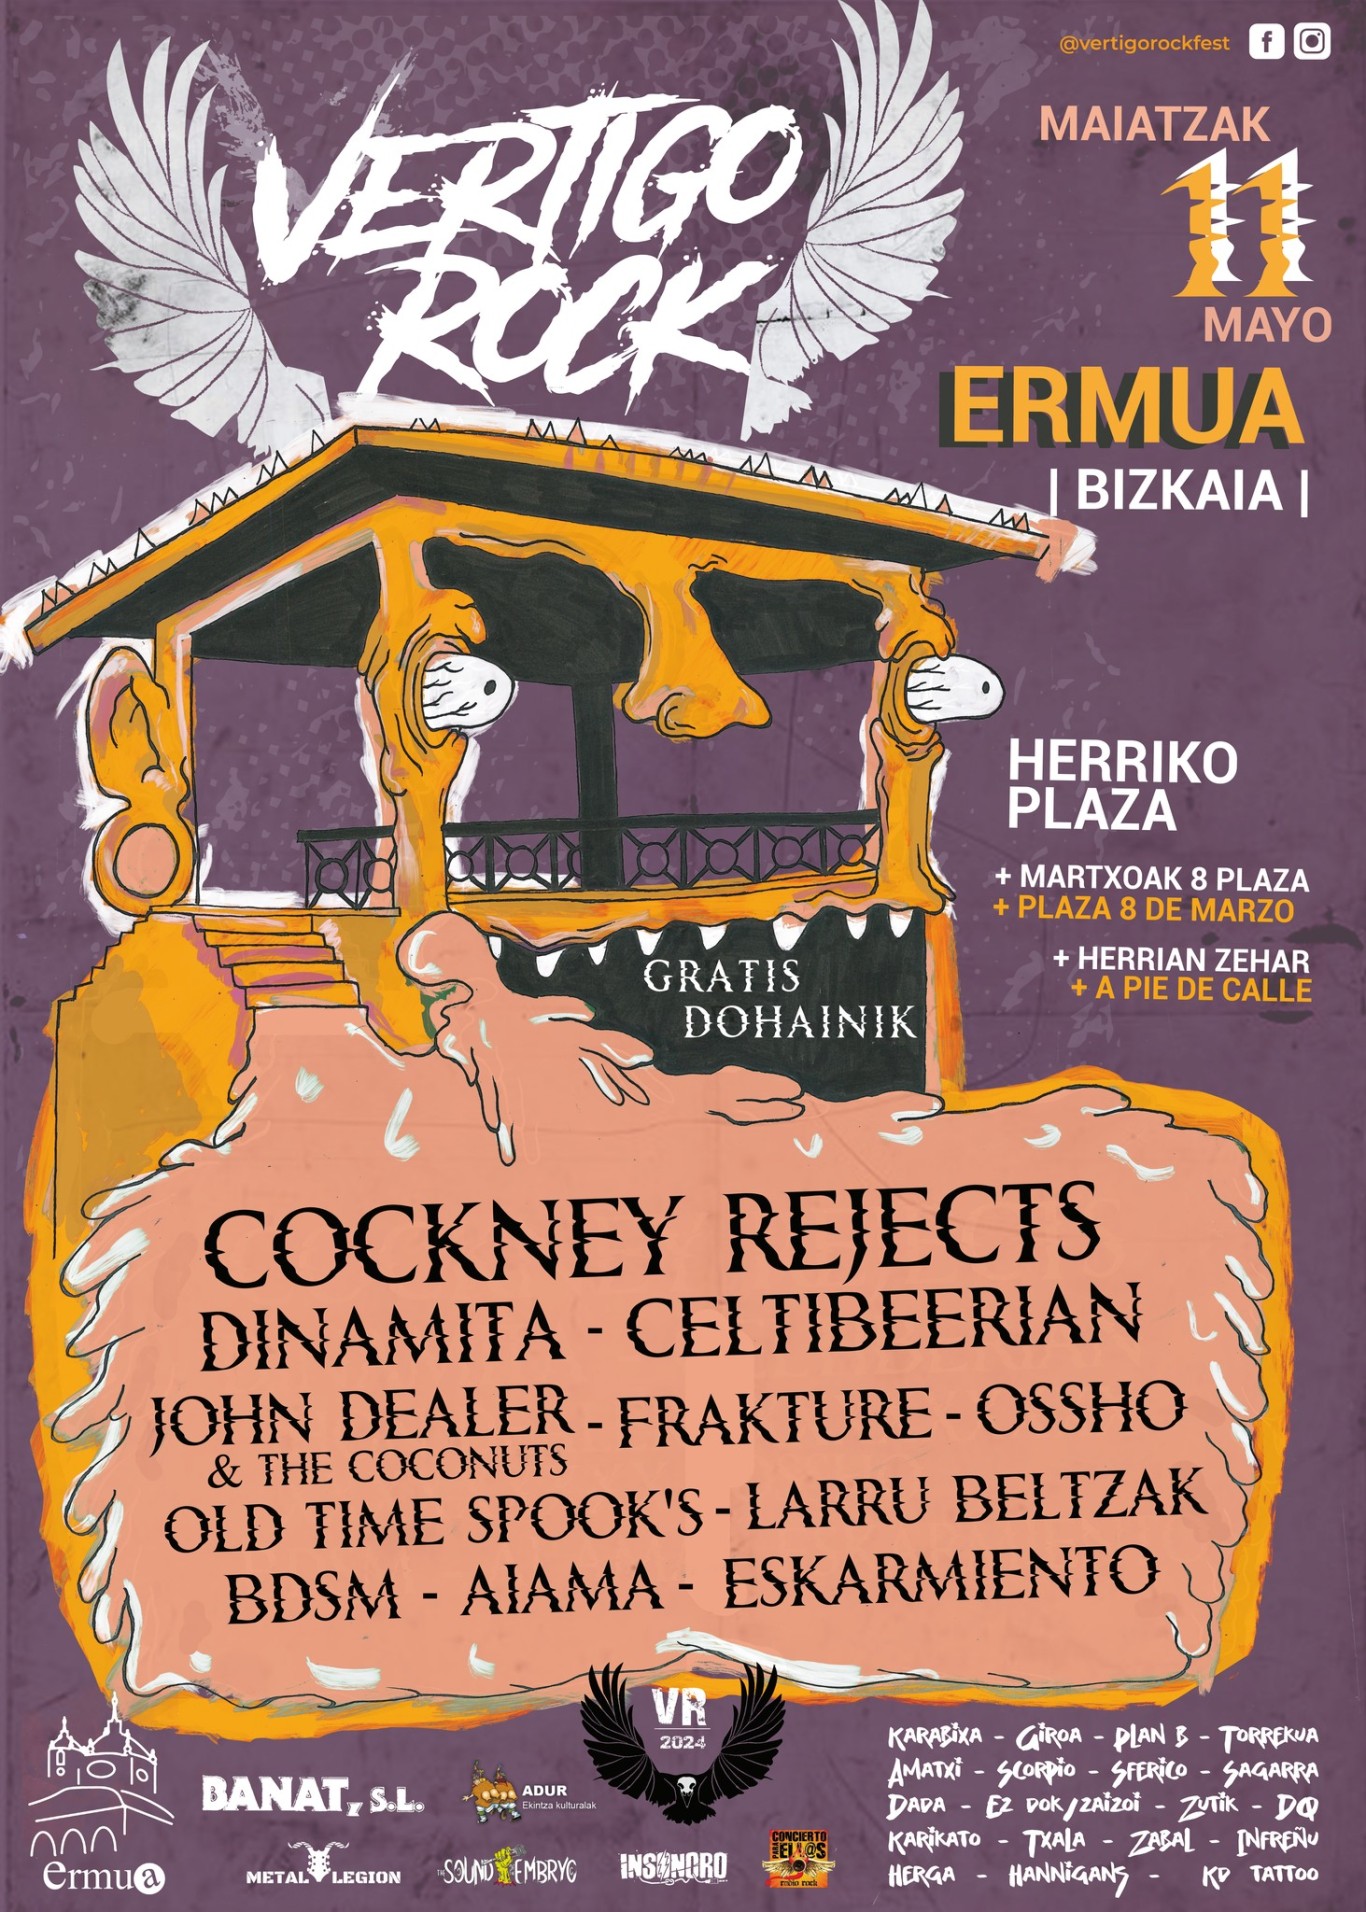 Cartel del festival de música ermuarra